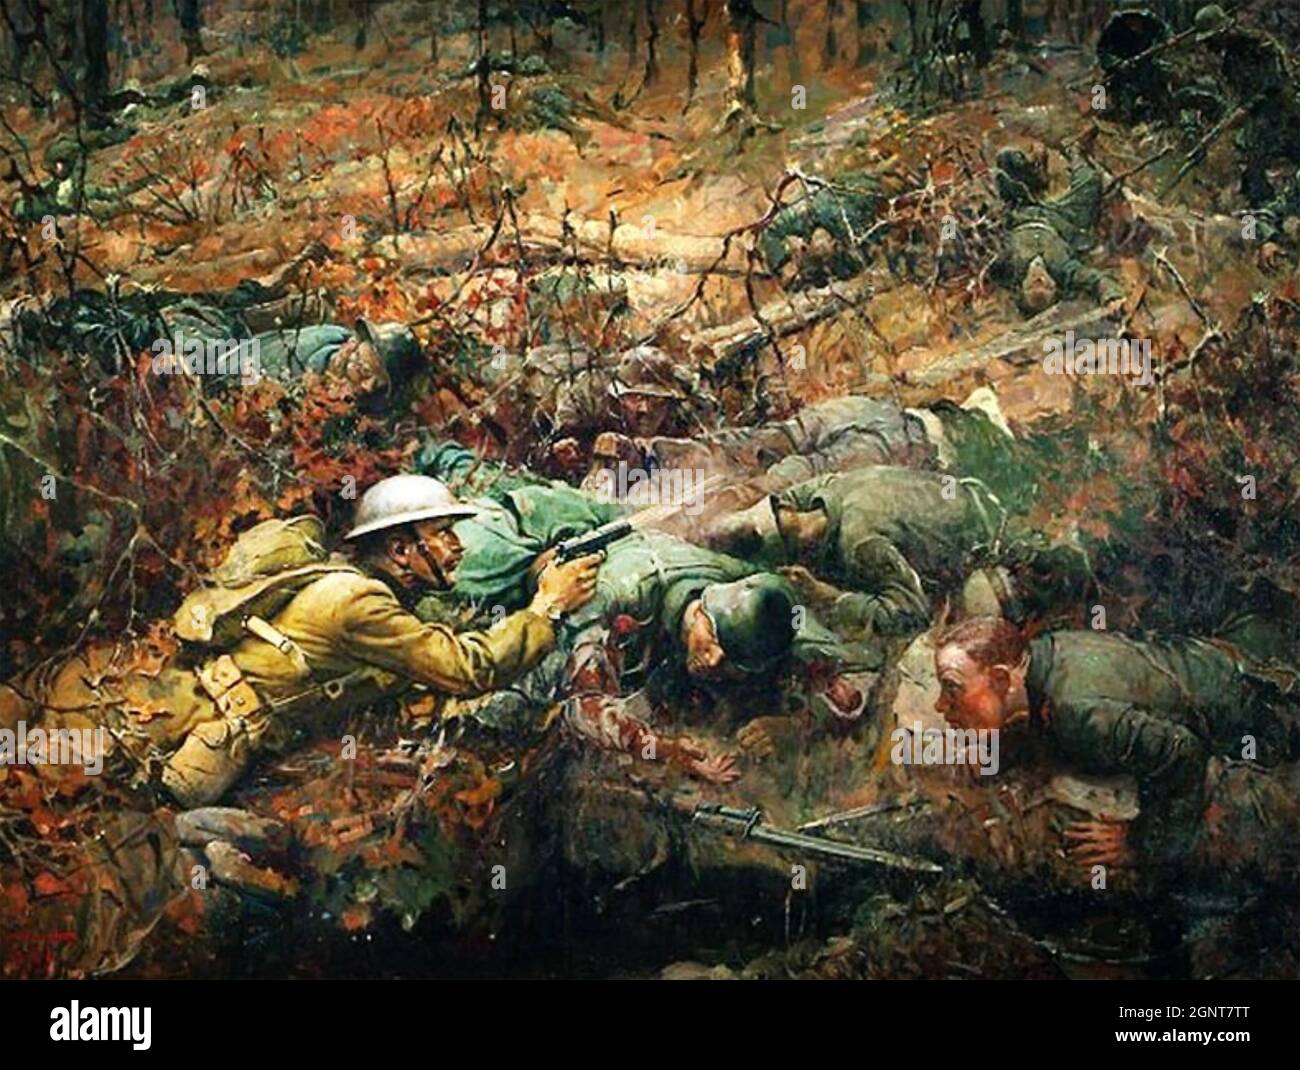 ALVIN YORK (1887-1964) einer der am meisten dekorierten amerikanischen Soldaten des Ersten Weltkriegs. Das Gemälde von Frank Schoonover aus dem Jahr 1919, das York in seiner Aktion „Ehrenmedaille“ am 8. Oktober 1918 während der Maas-Argonne-Offensive zeigt. Stockfoto